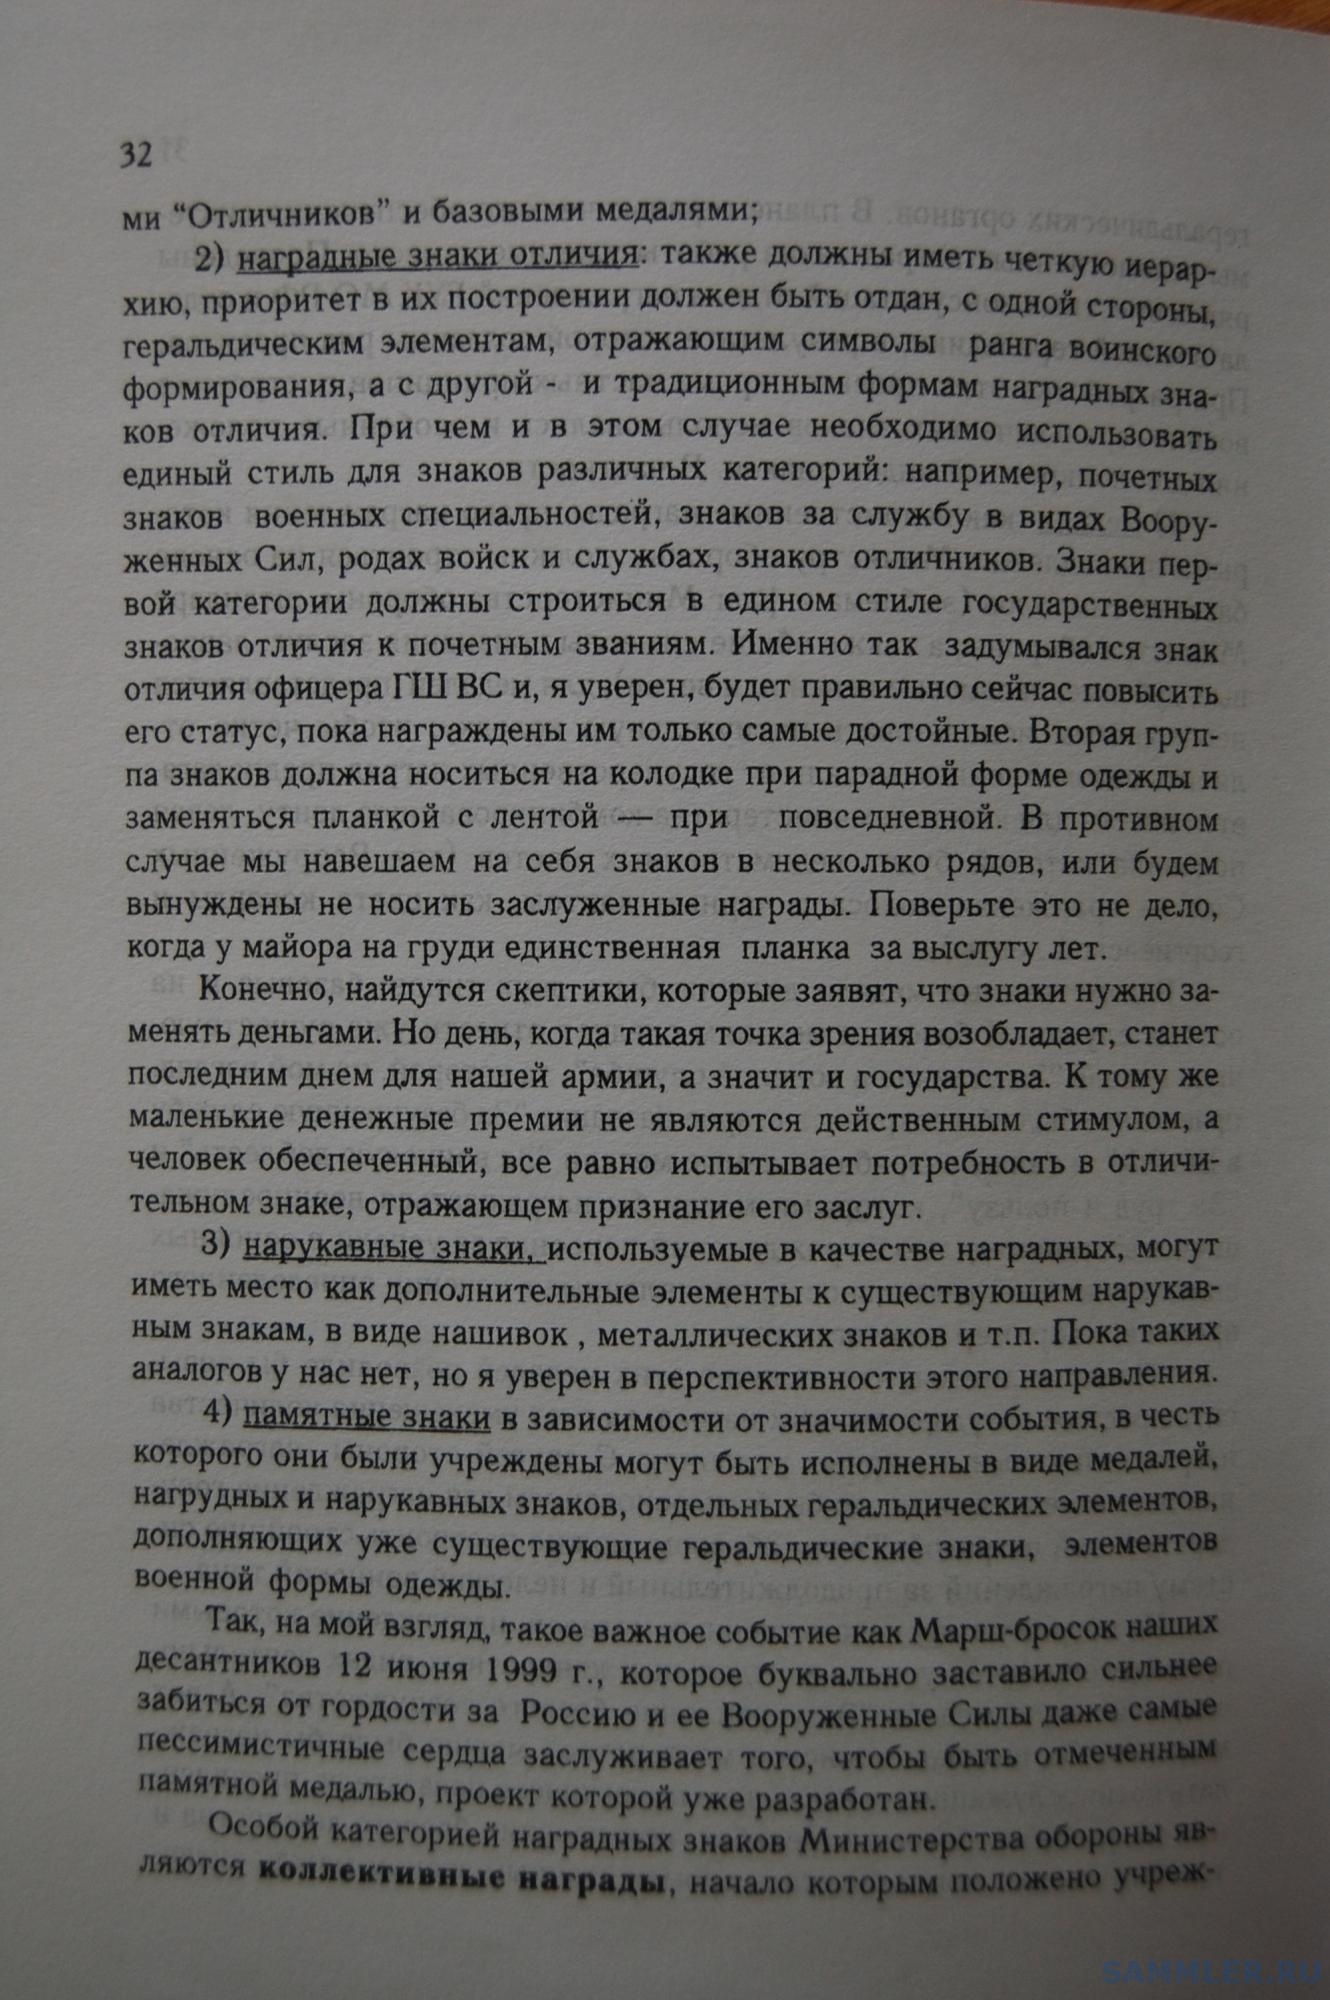 Кузнецов О.В. - Геральдическое обеспечение ВС РФ. М., 1999. С. 32.JPG